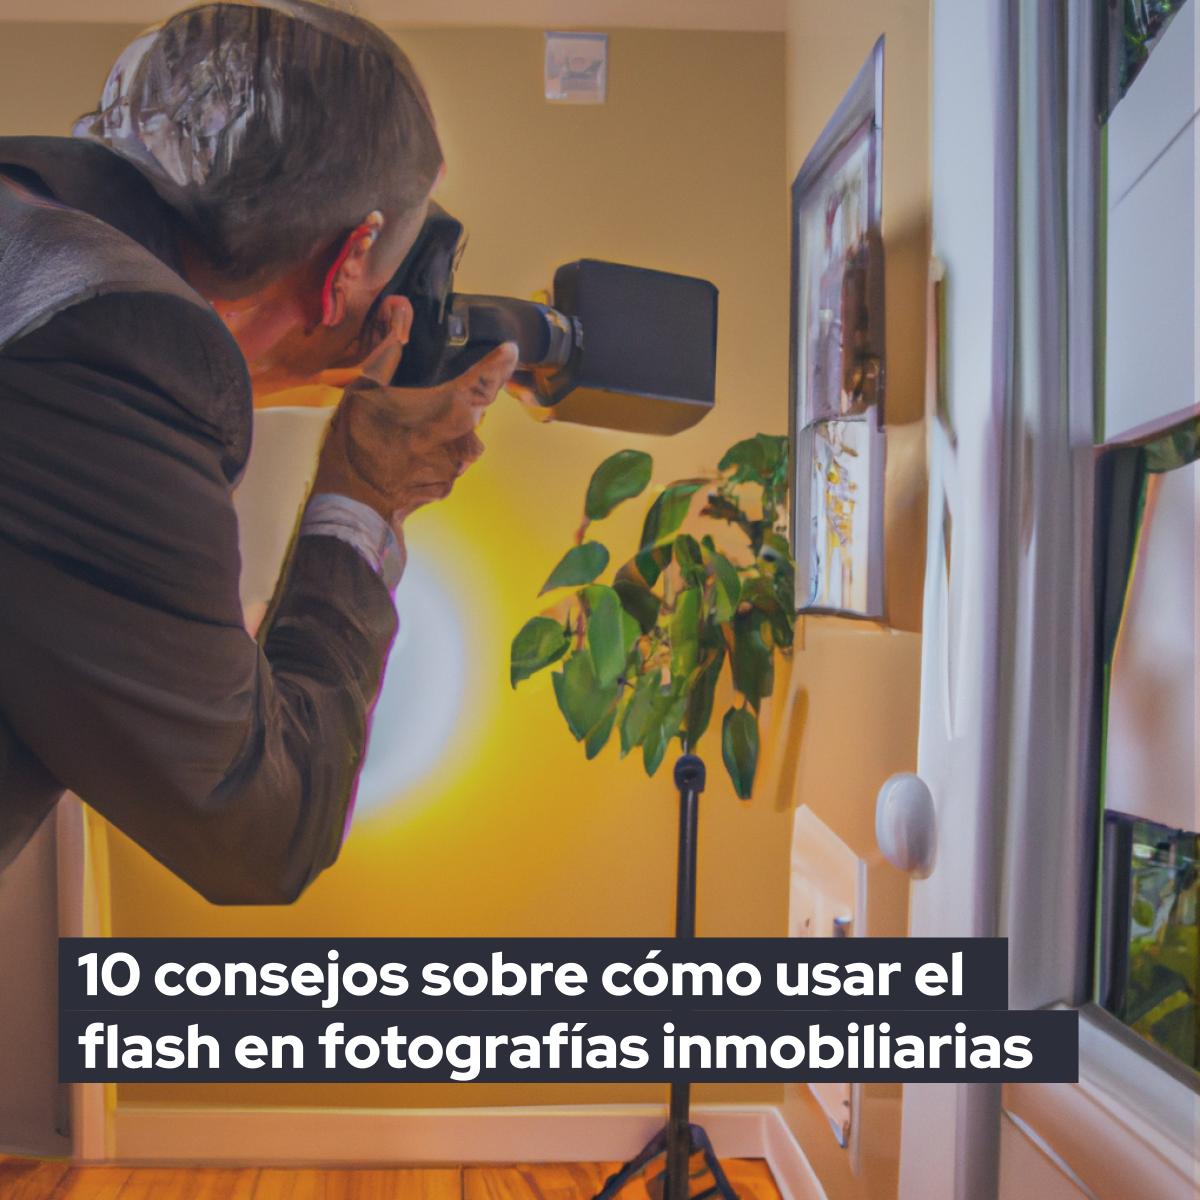 10 consejos sobre cómo usar el flash en fotografías inmobiliarias